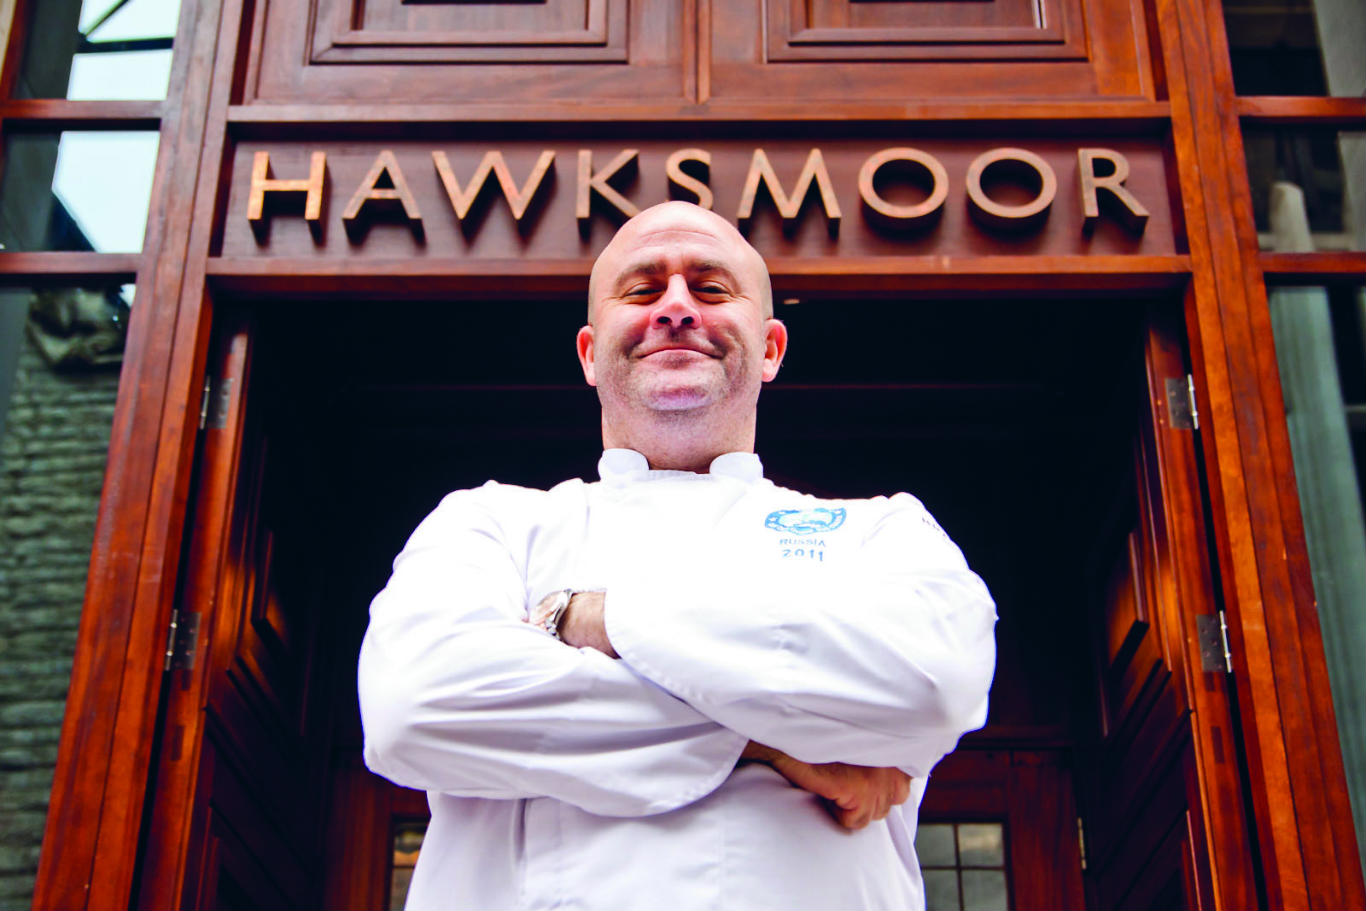 Hawksmoor chef